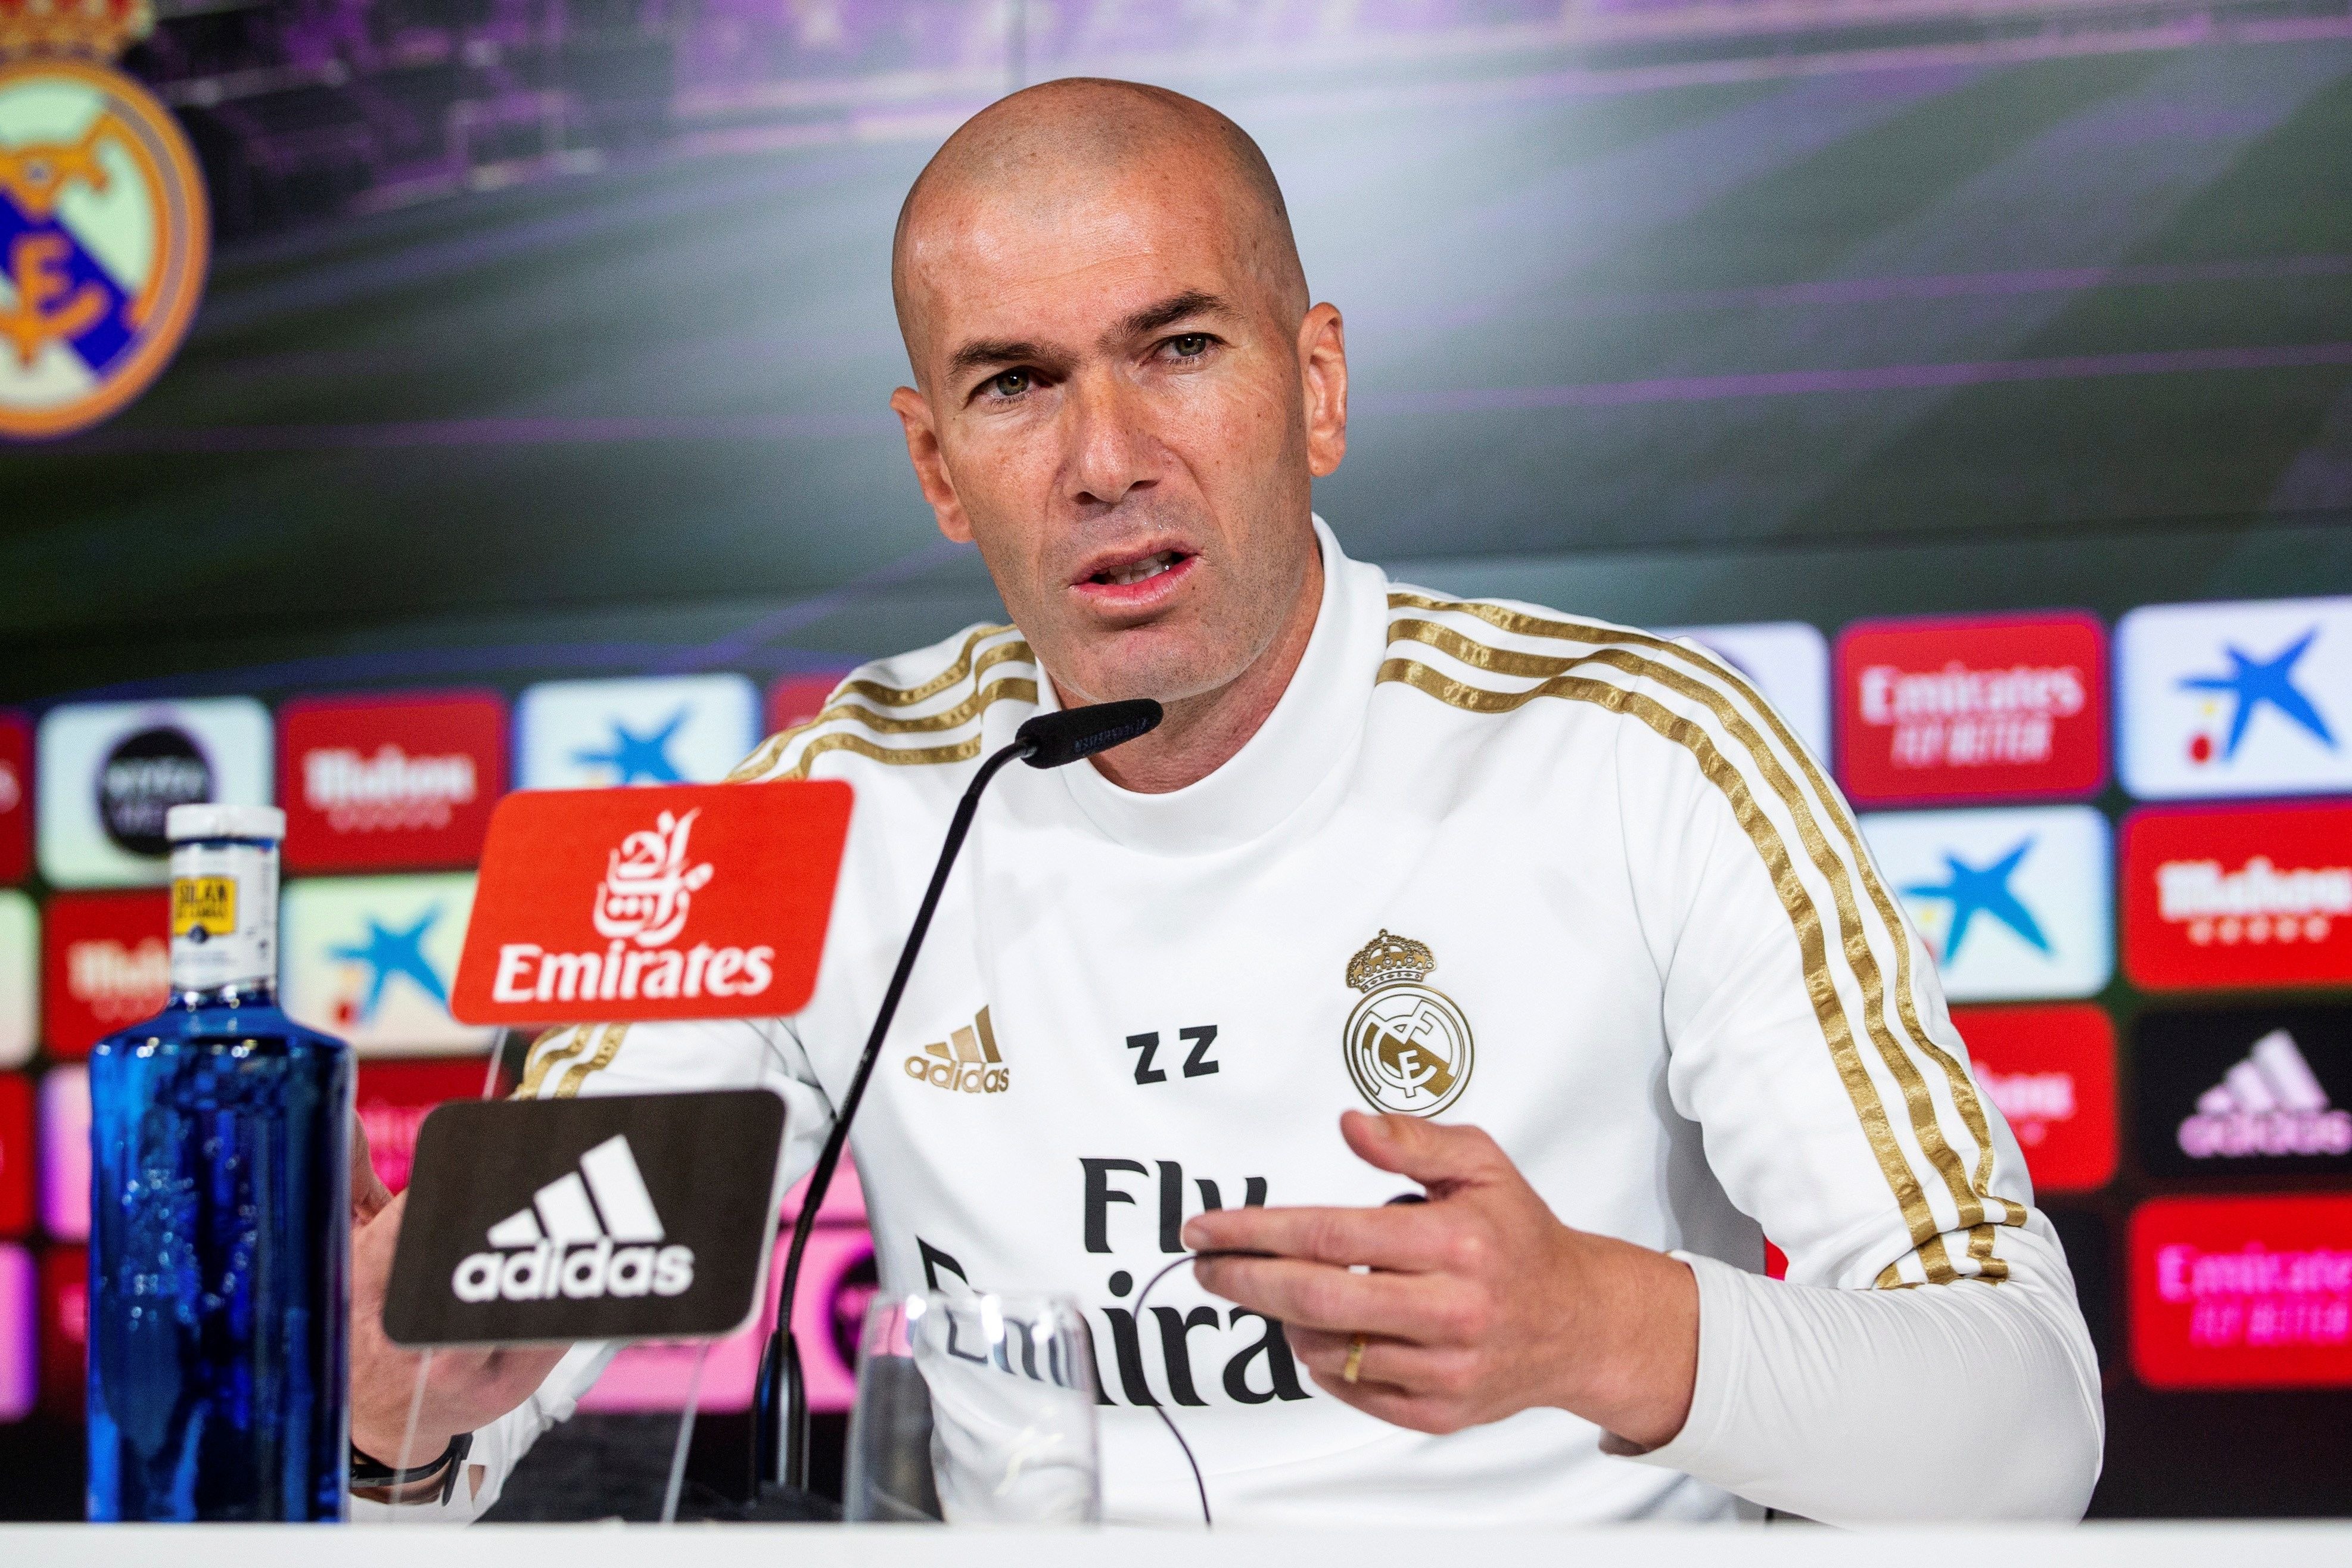 Zidane arribarà al PSG amb un jugador del Reial Madrid, li ha donat la seva paraula